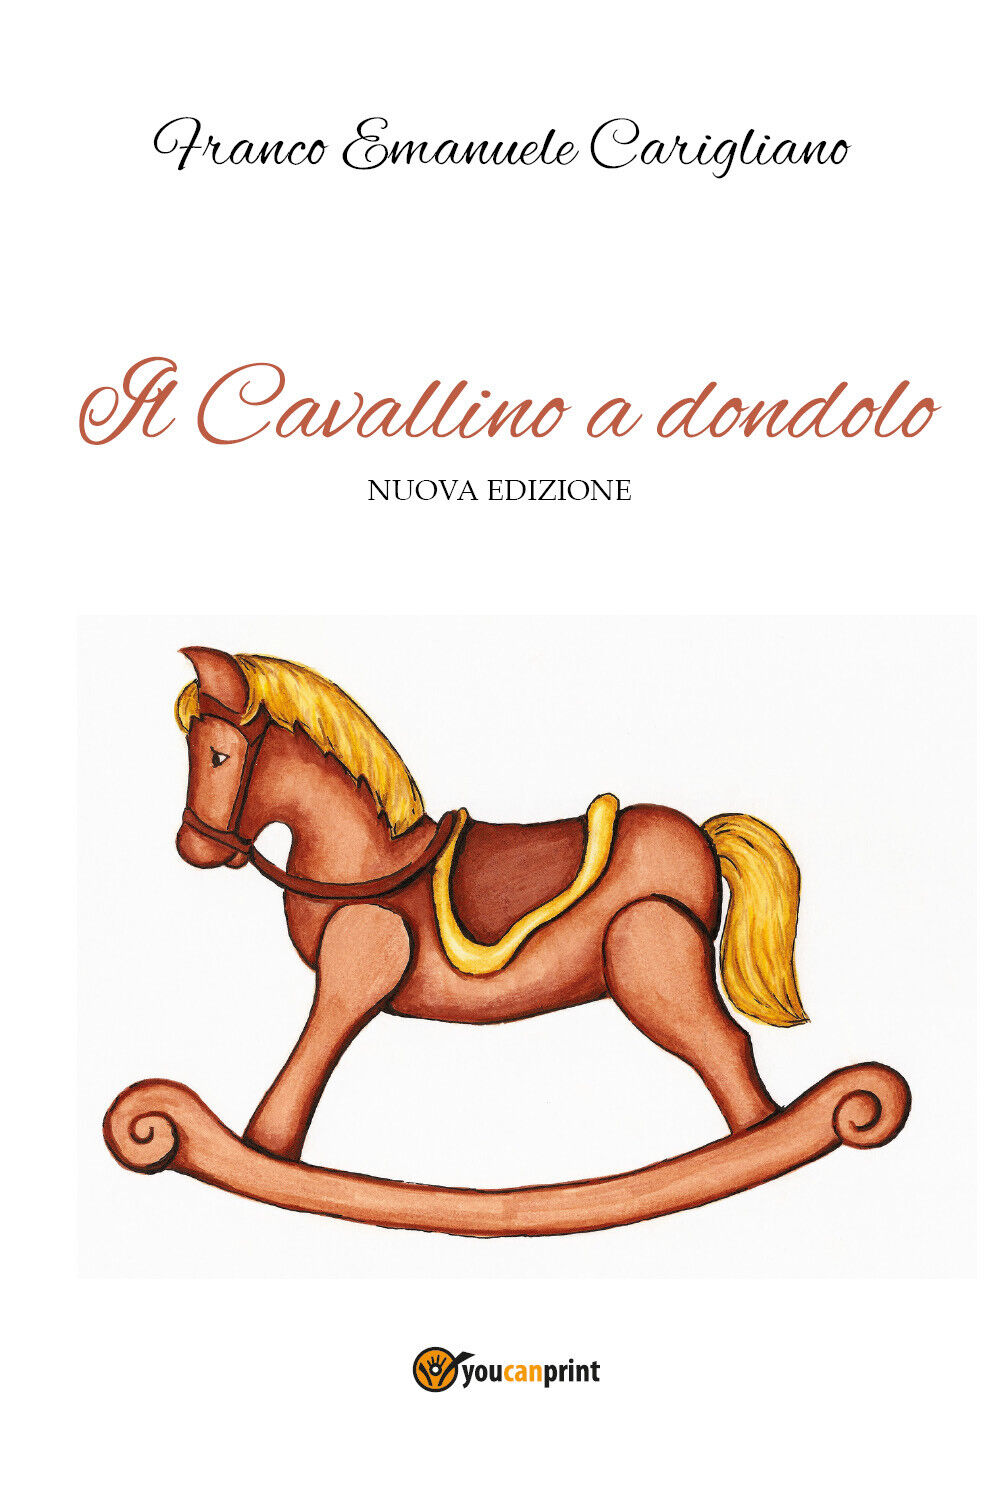 Il Cavallino a dondolo - Nuova edizione di Franco Emanuele Carigliano,  2022,  Y